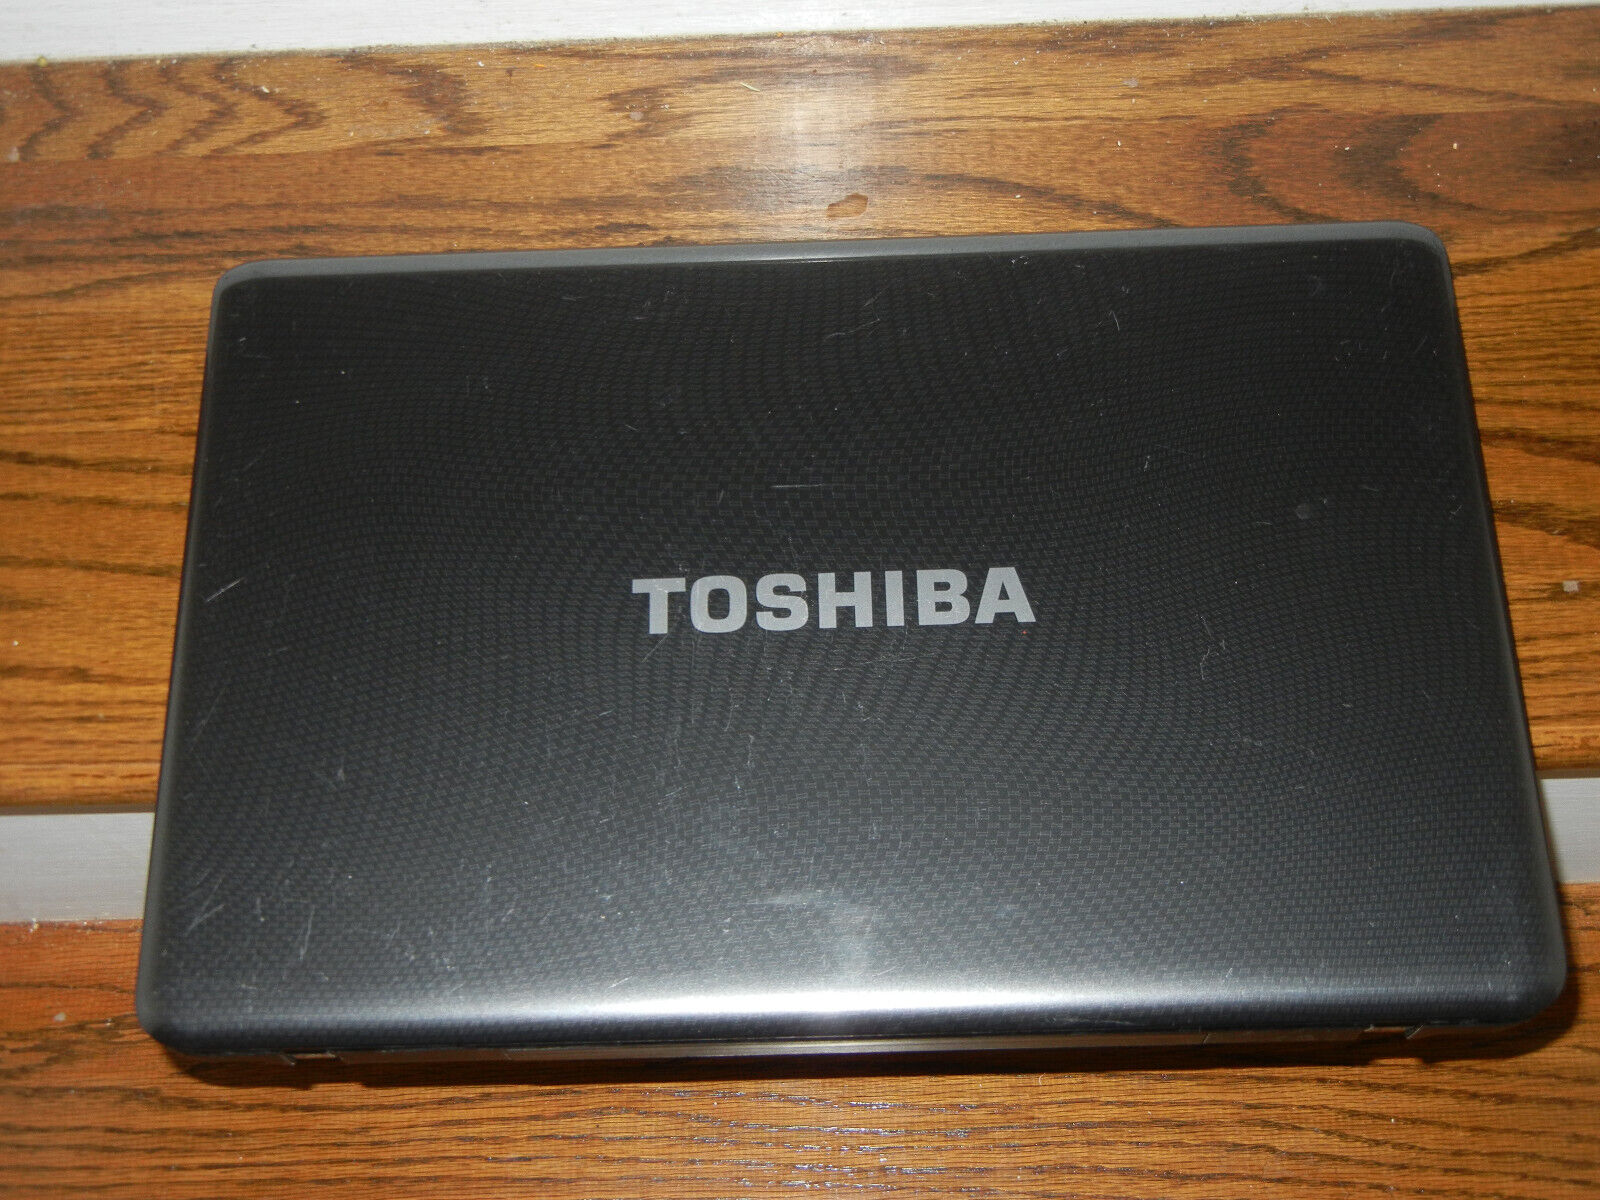 Toshiba Satellite L675 S7048